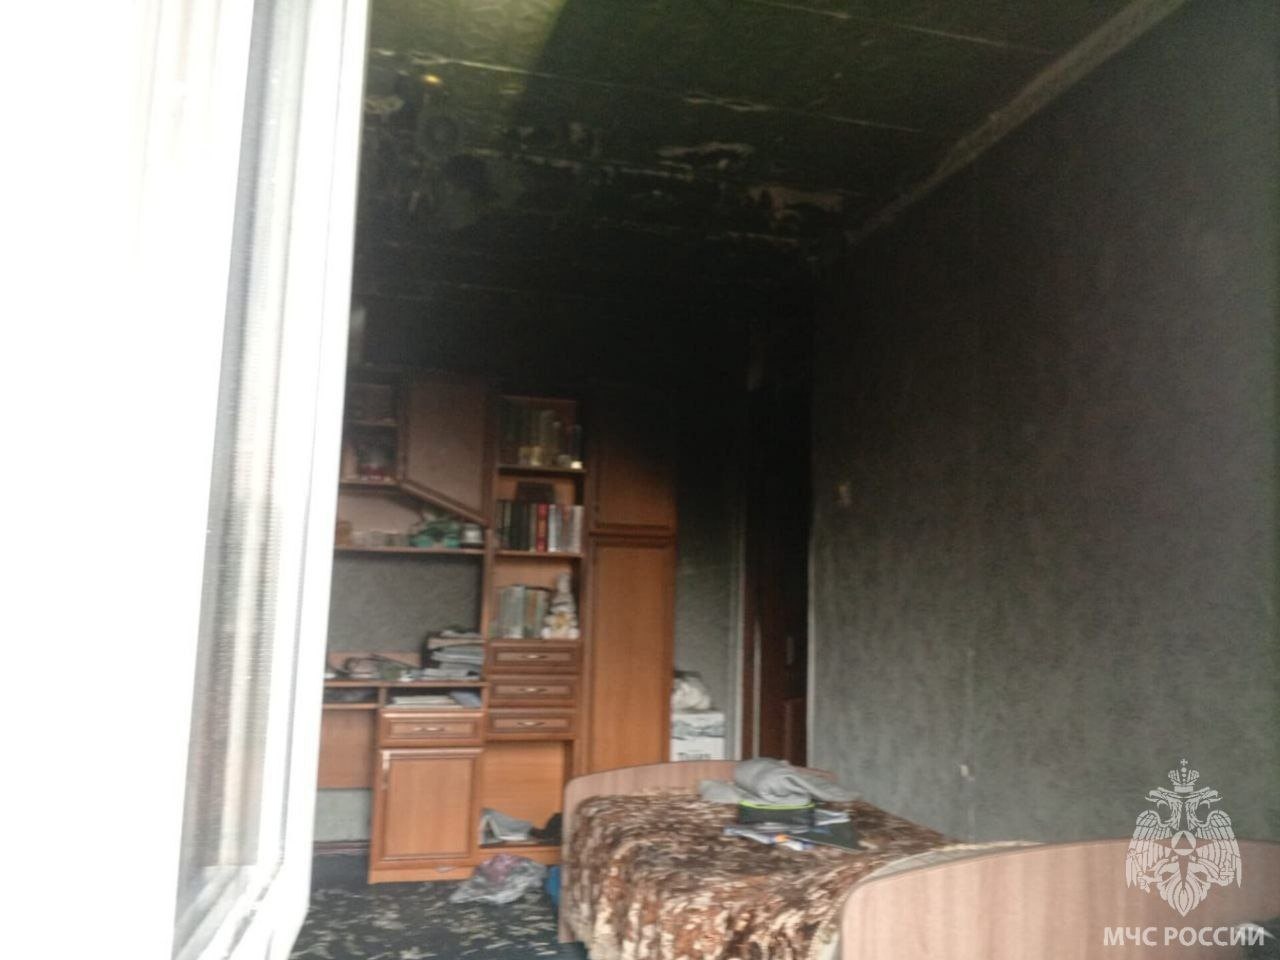 Сегодня под Калининградом пожарные предотвратили распространение огня на соседние квартиры